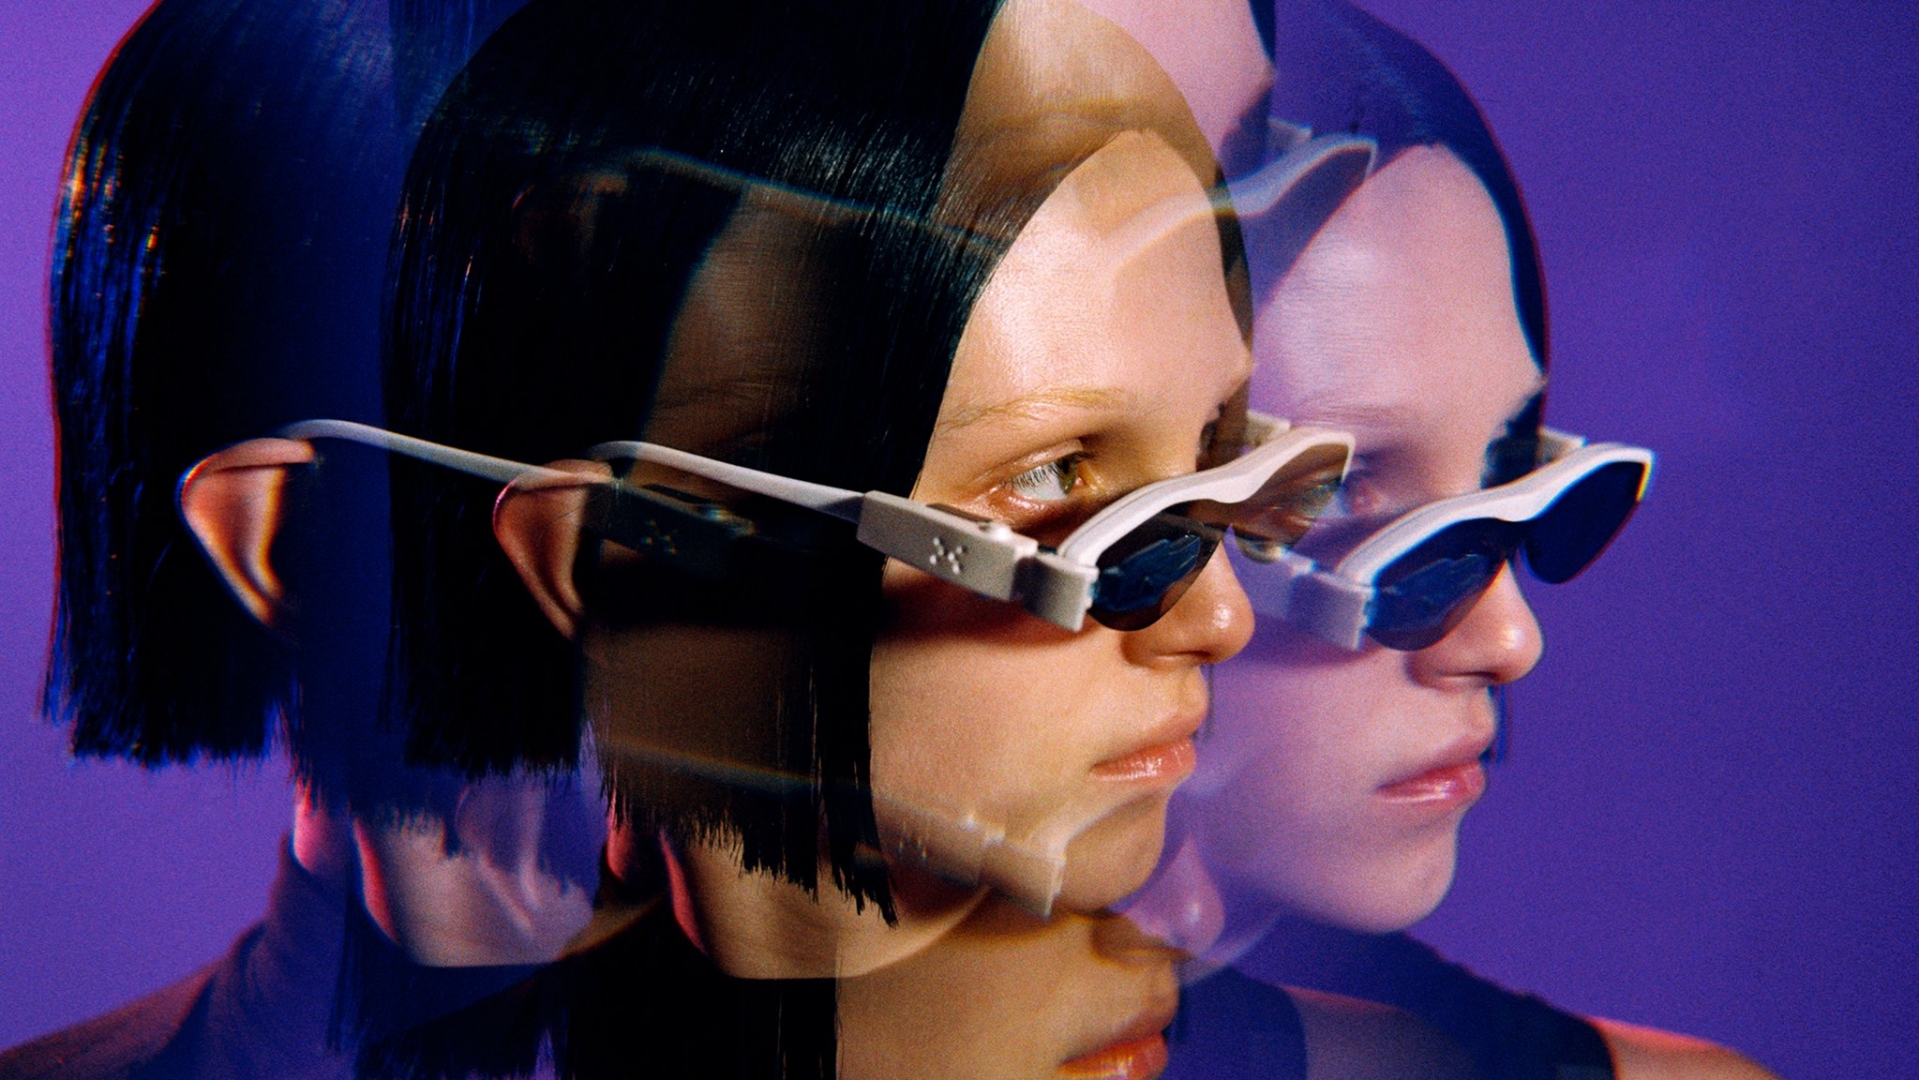 # 後人類時代的宇宙眼鏡：C2H4 x RENONER 打造「穿戴式」科幻世界 11